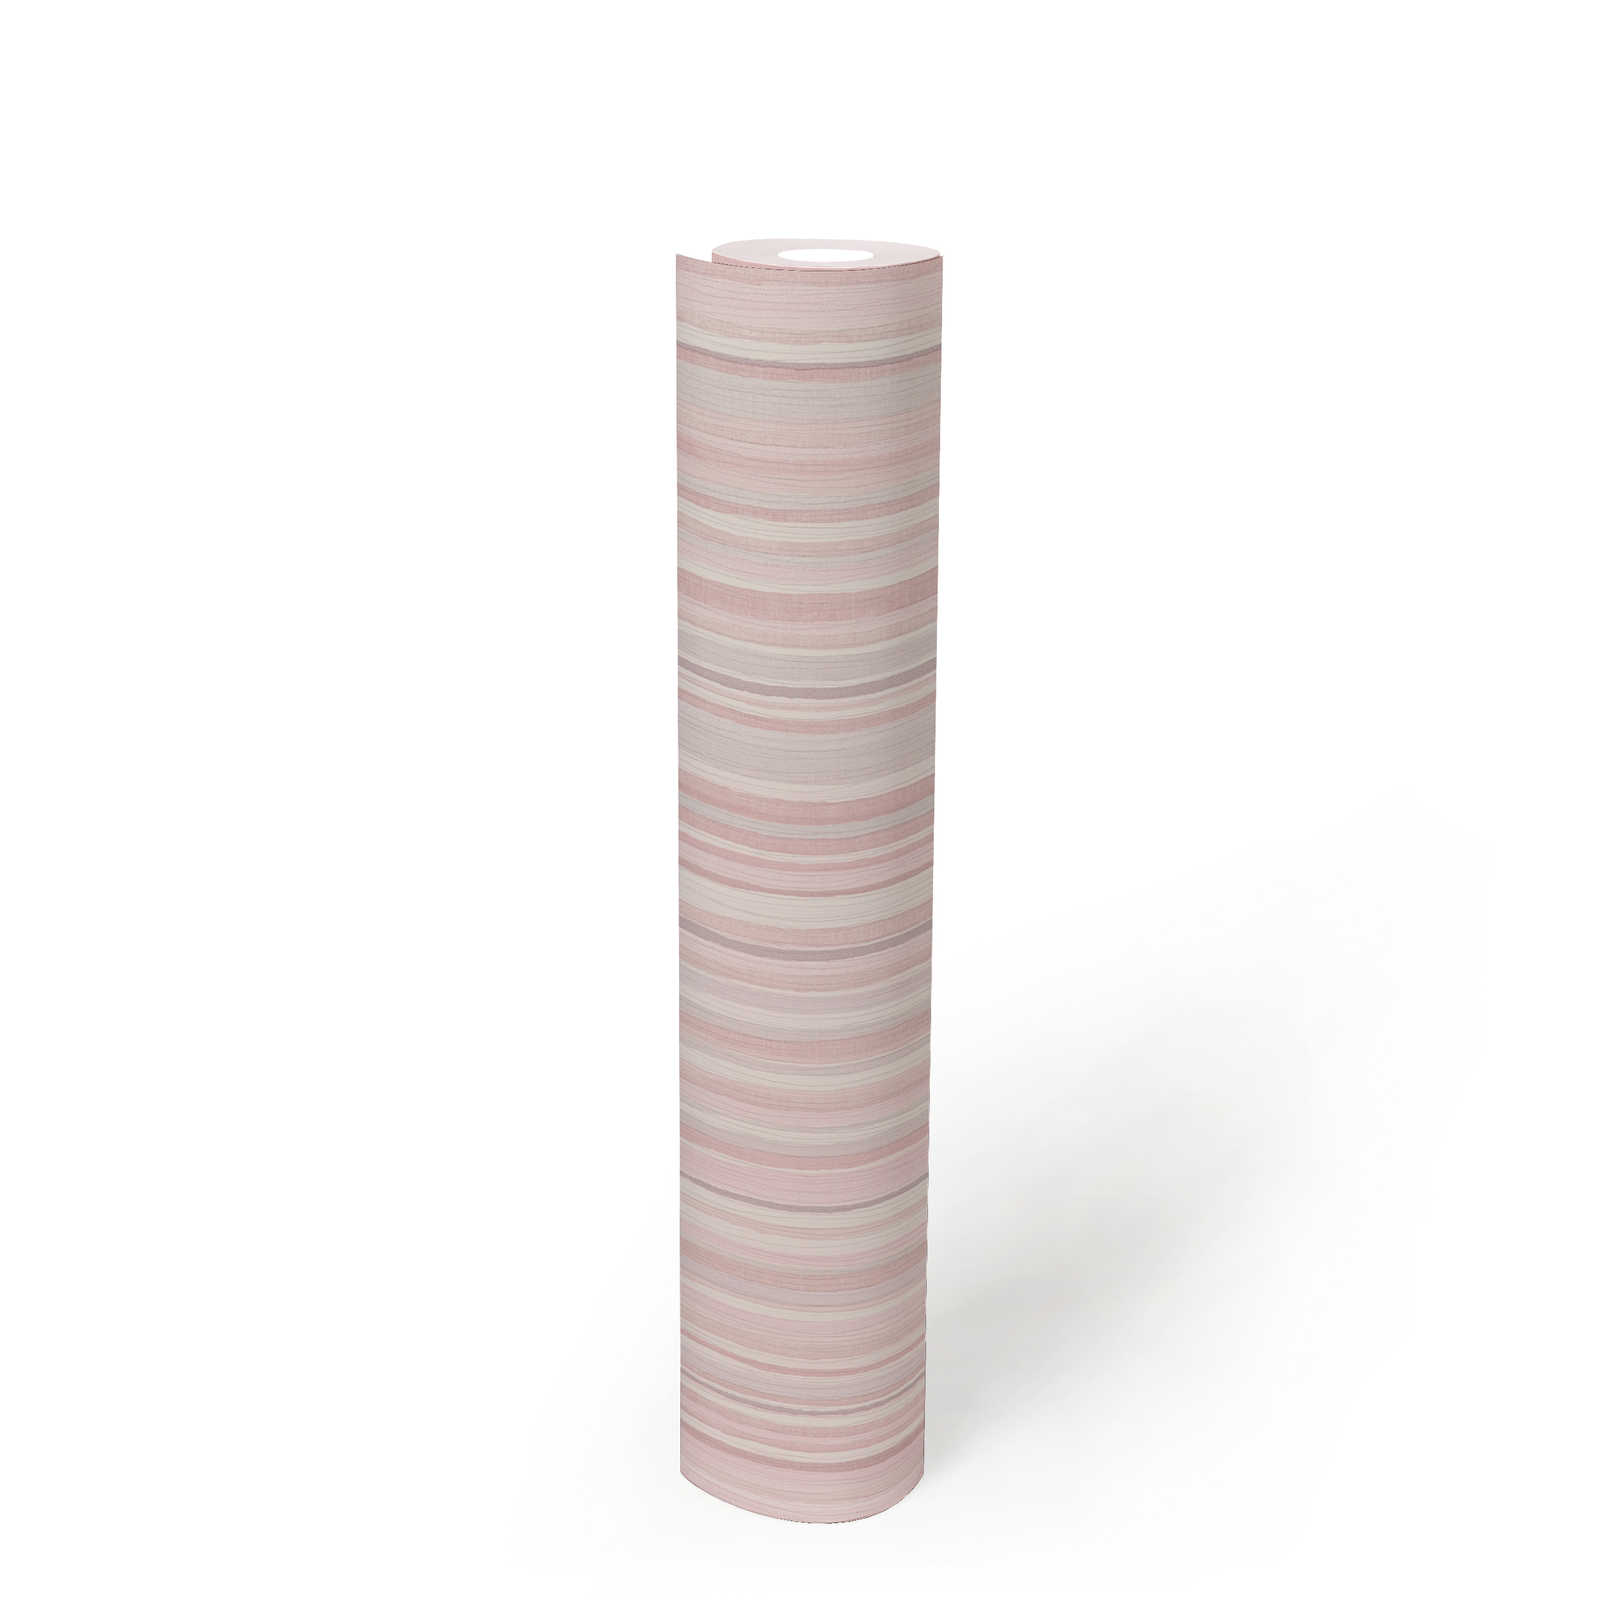             Papier peint à rayures avec motif de lignes étroites - rose, gris
        